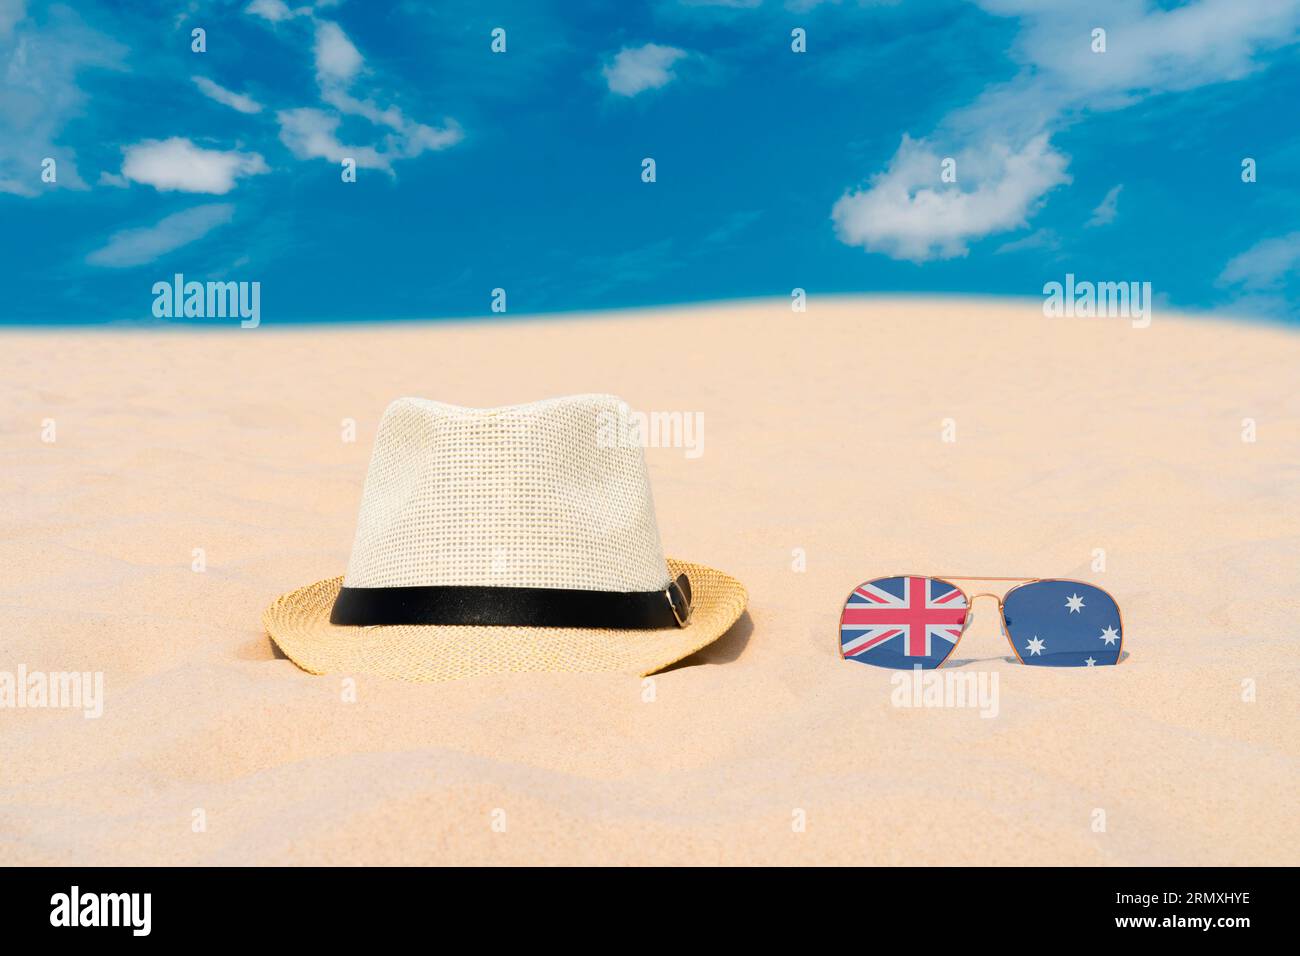 Gli occhiali da sole con occhiali sotto forma di bandiera dell'Australia e un cappello giacciono sulla sabbia contro il cielo blu. Concetto di vacanze estive e viaggi in Australia Foto Stock